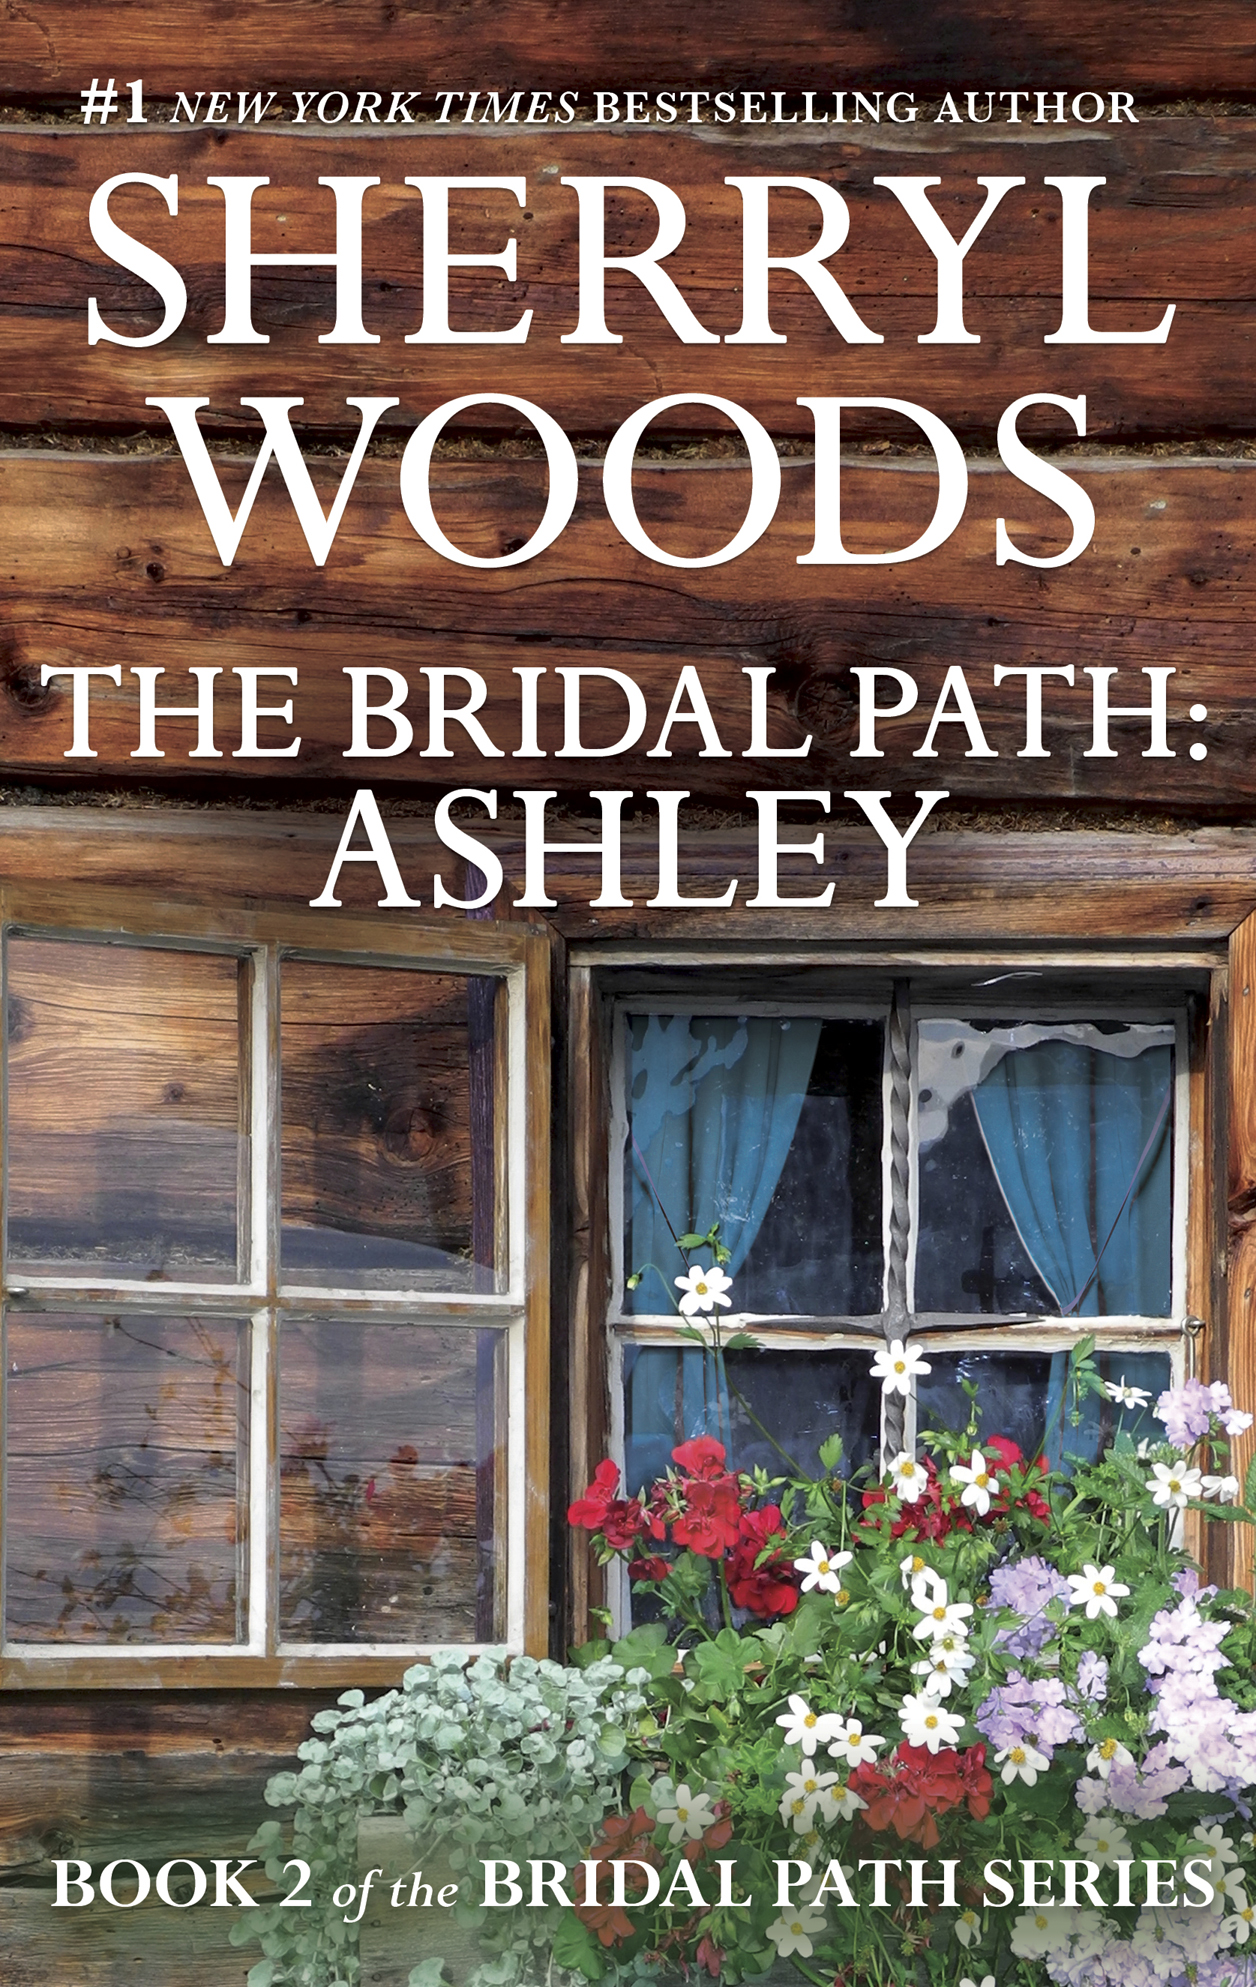 The Bridal Path: Ashley (1996)